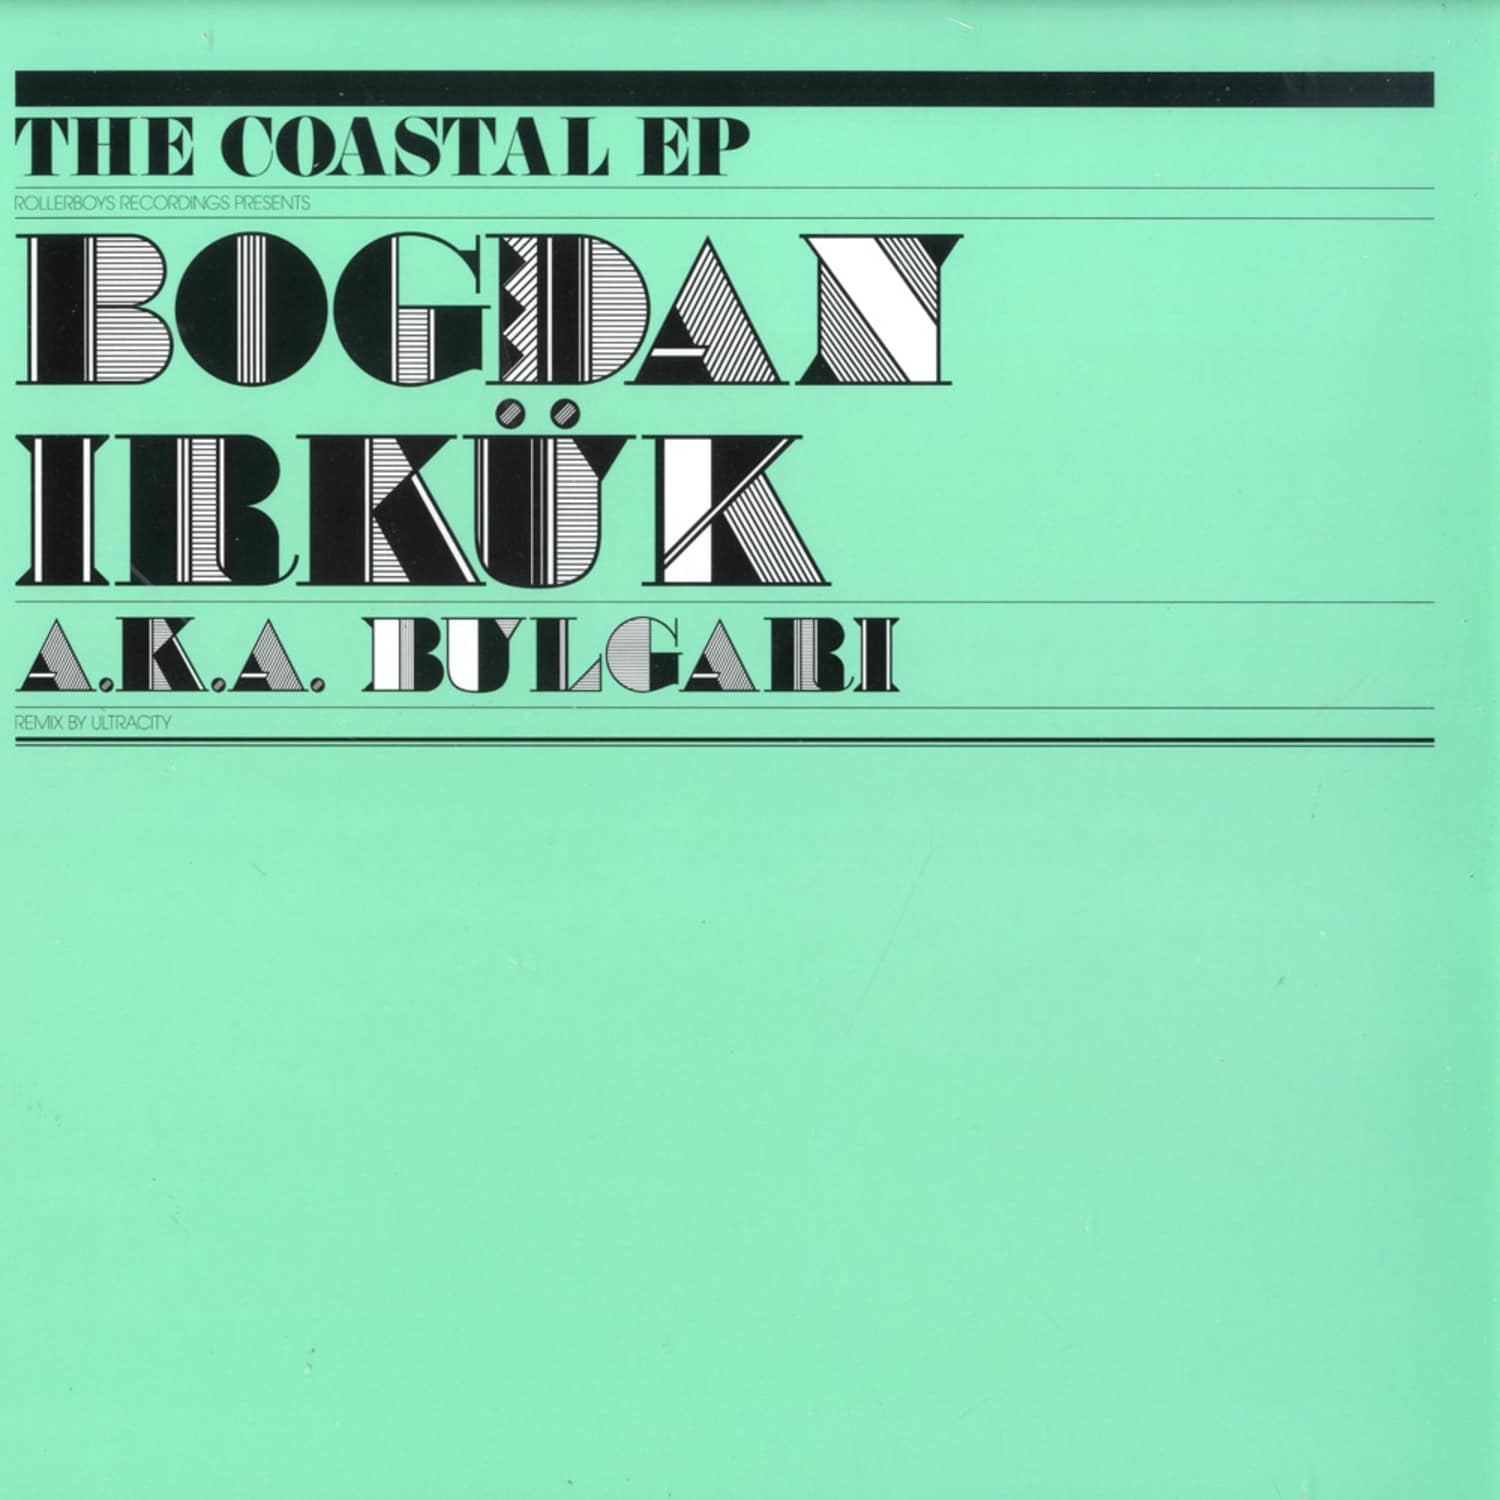 Bogdan Irkuk aka Bulgari - THE COASTAL EP